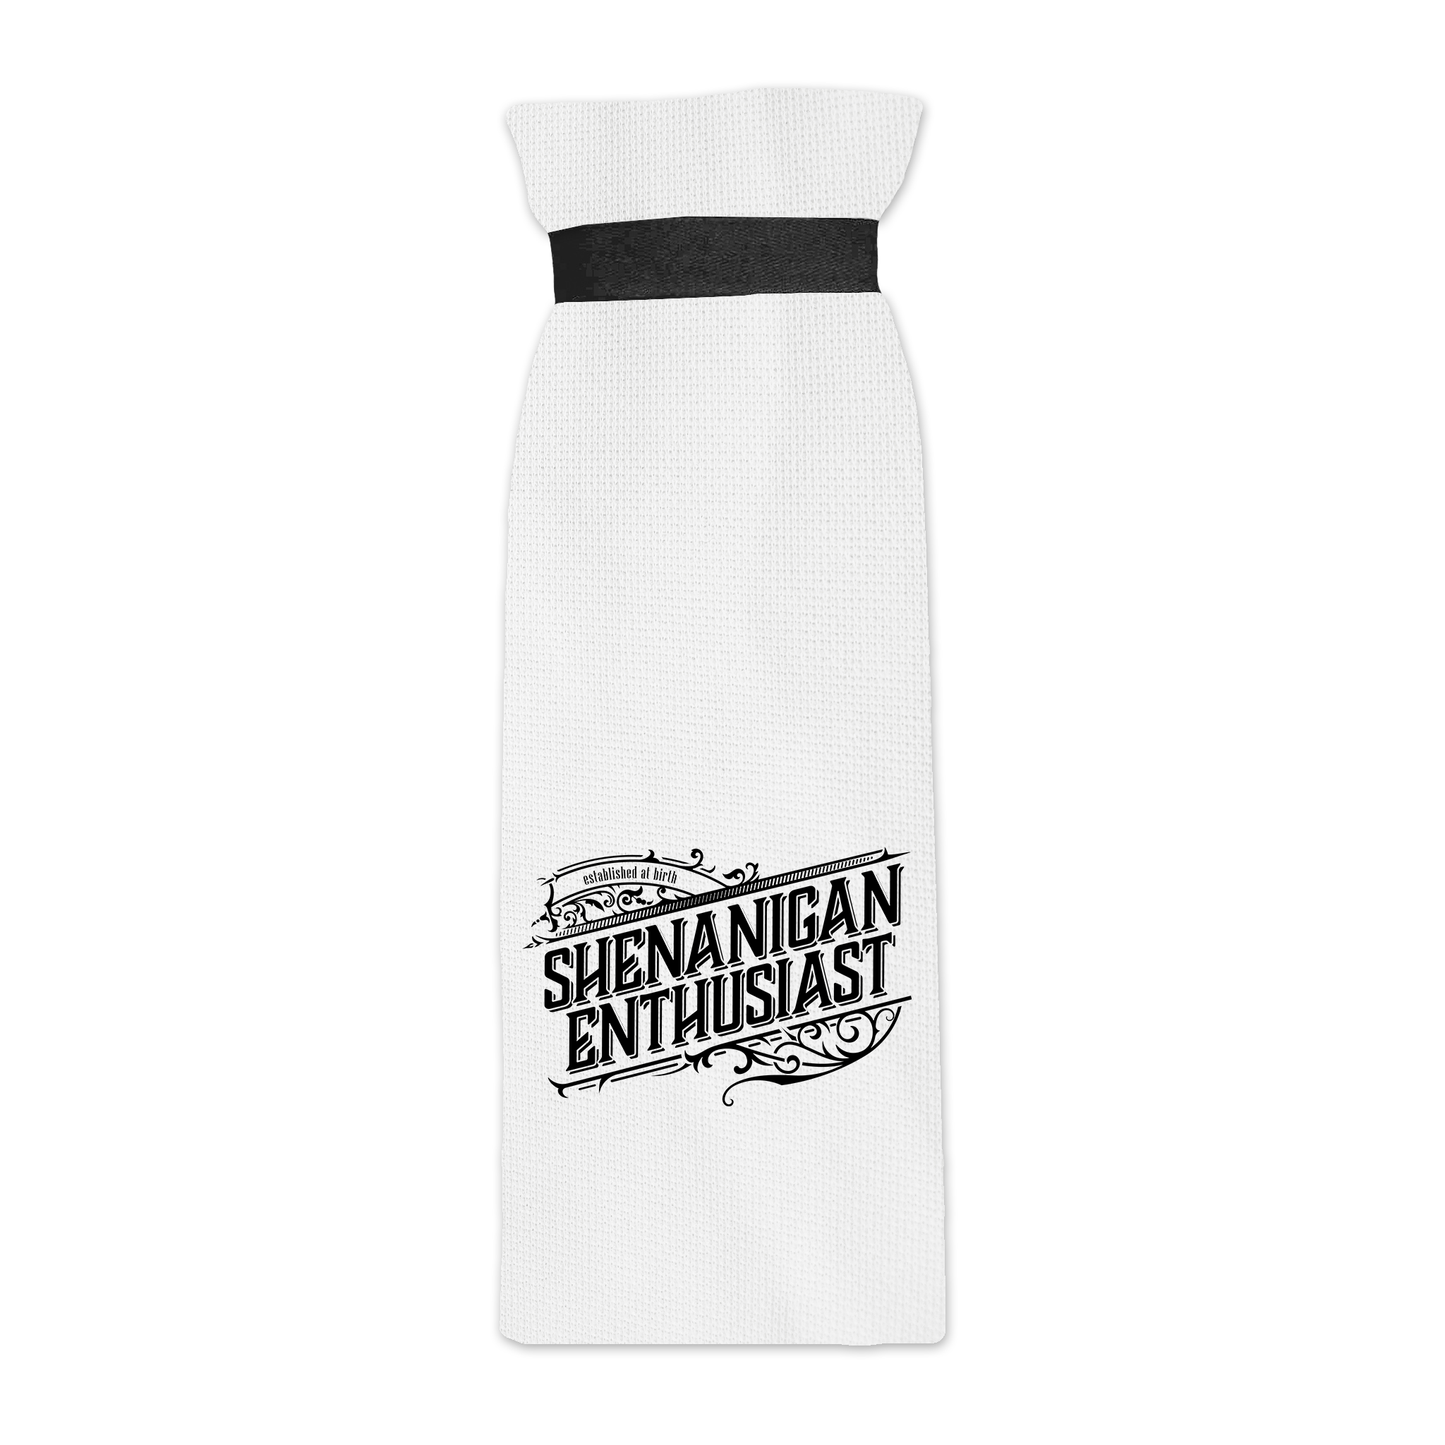 Shenanigan Enthusiast | Funny Bathroom Towels